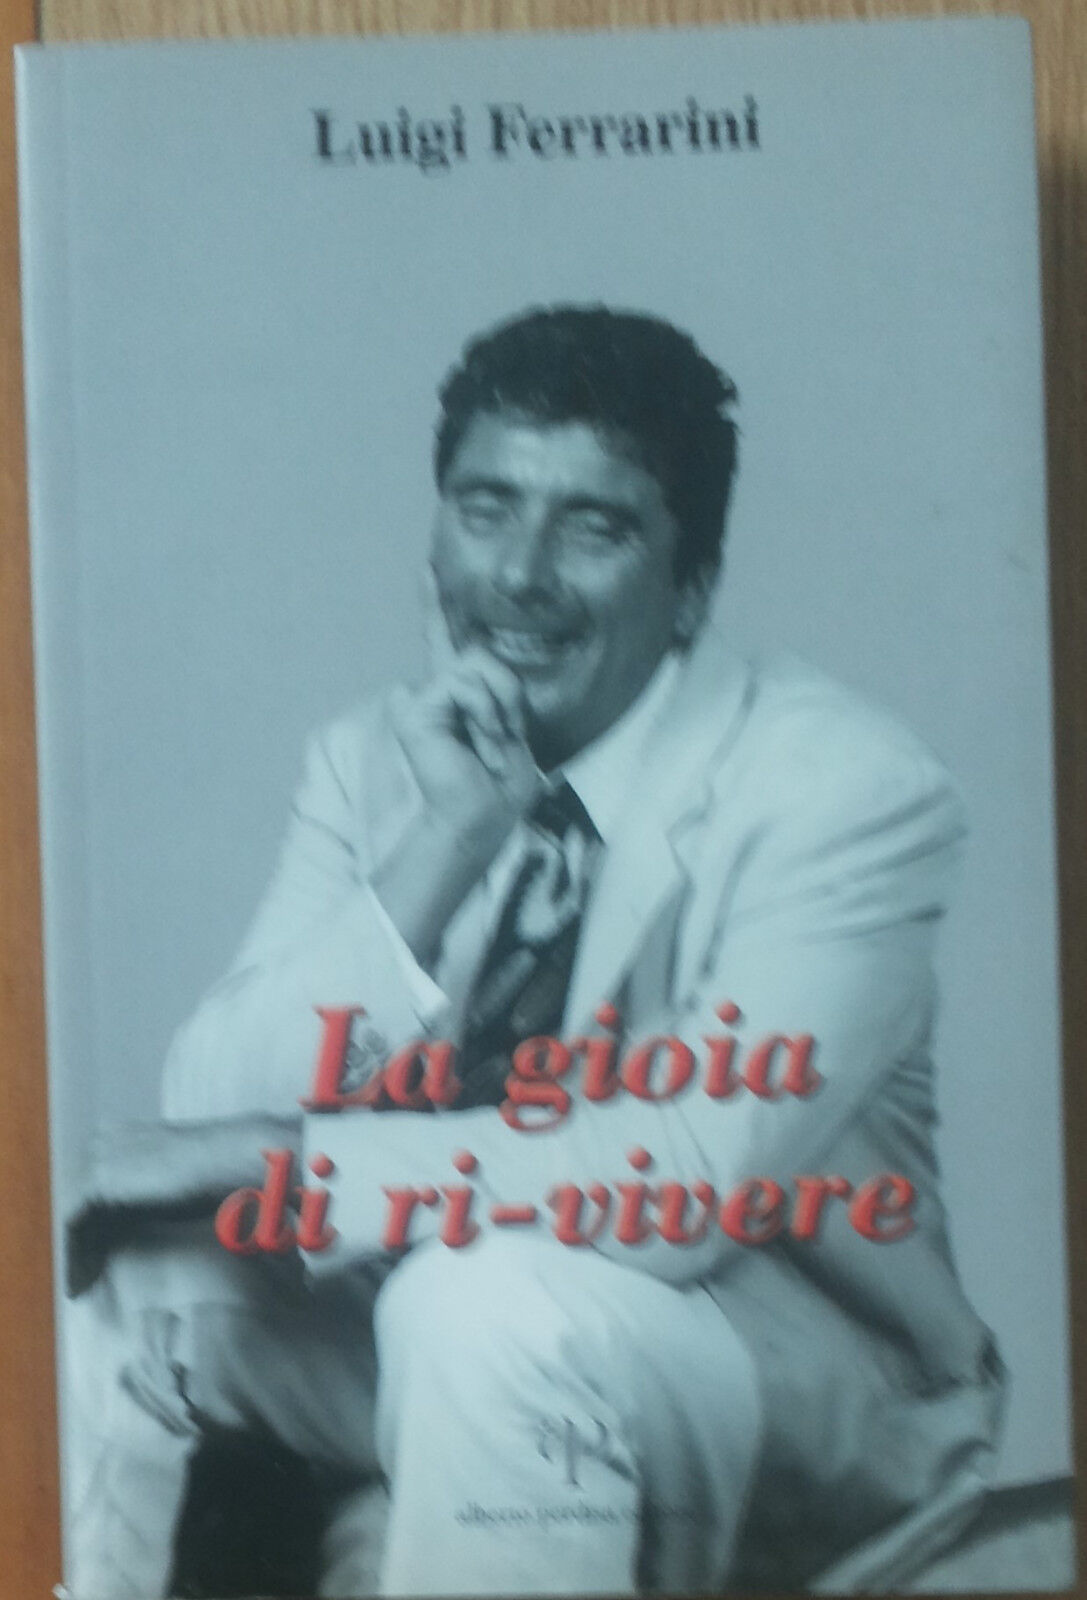 La gioia di ri-vivere - Ferrarini - Alberto Perdisa Editore,2005 - 